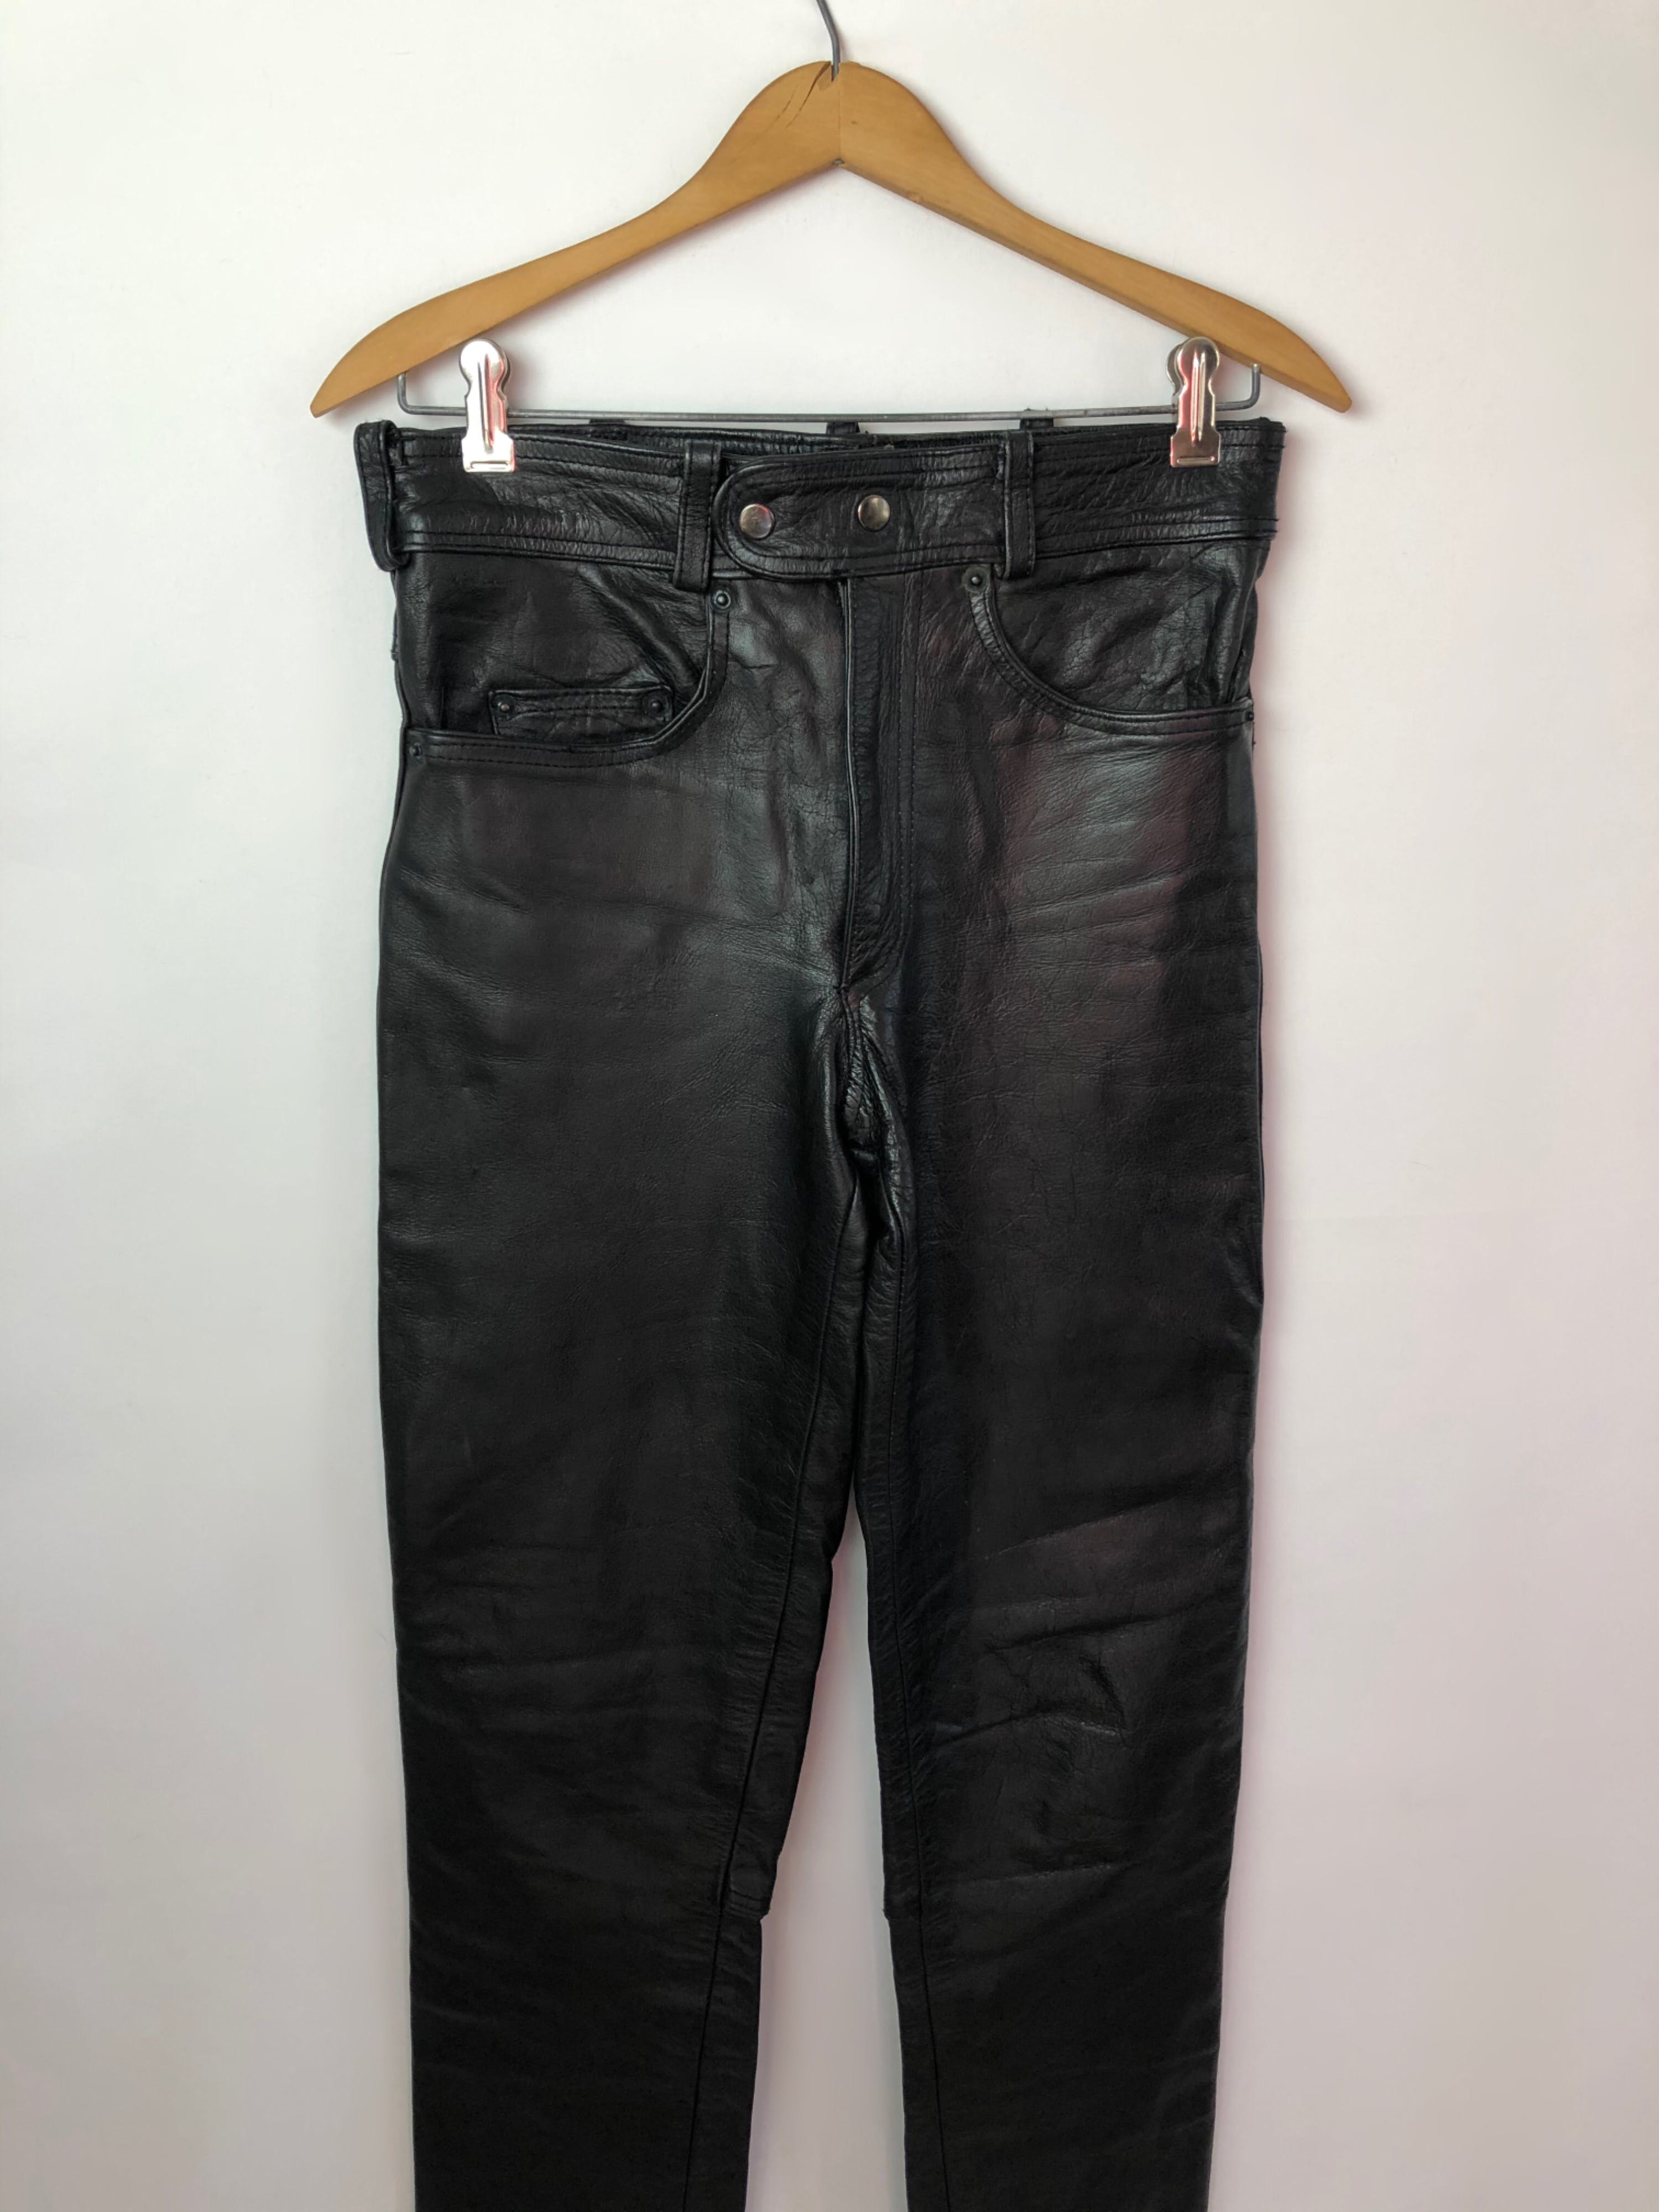 Vintage 70’s Black Leather Motorcycle Biker Pants | Shop THRILLING